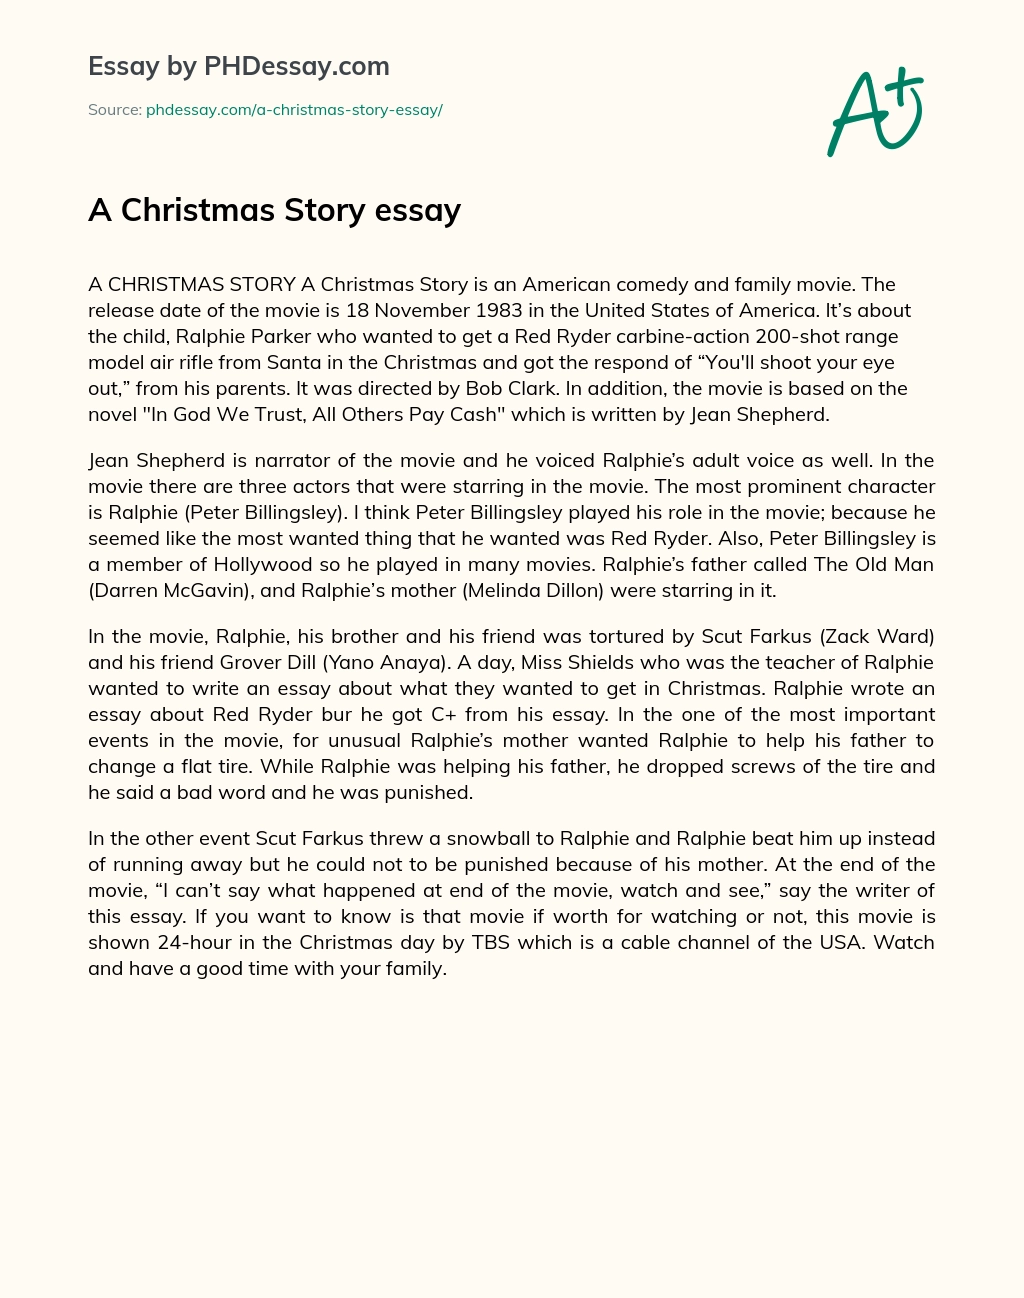 A Christmas Story essay essay